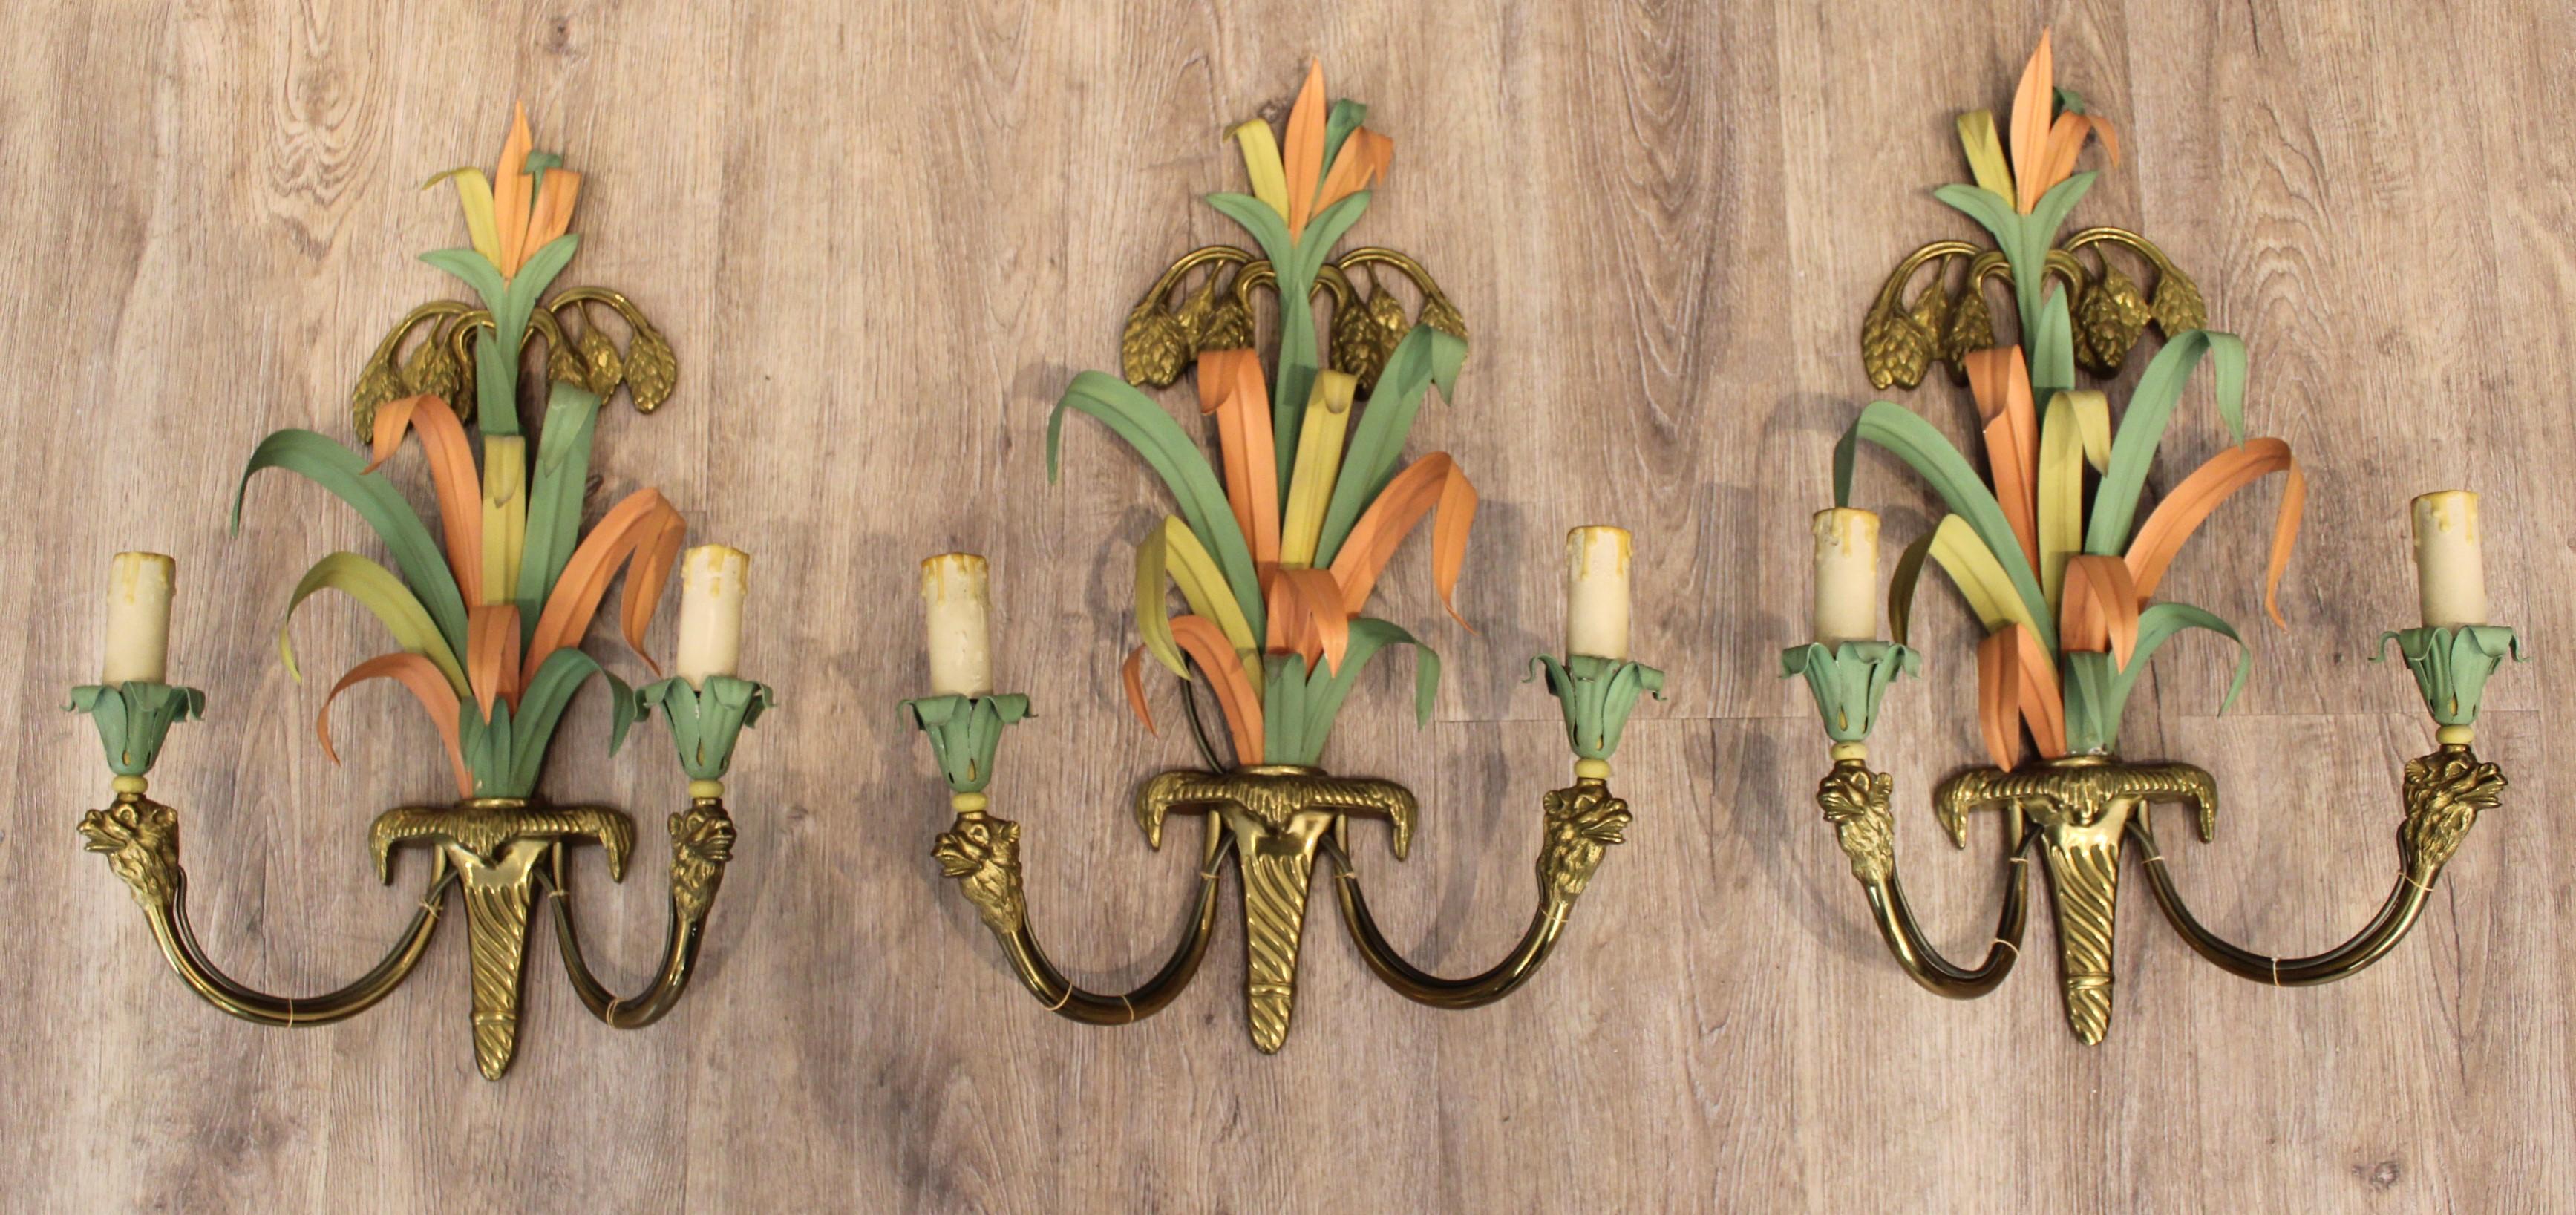 Suite aus drei Wandleuchten von Maison Baguès,
Bronze und polychrom bemaltes Metall, Palmblatt- und Kamelkopfdekor,
Frankreich, um 1950